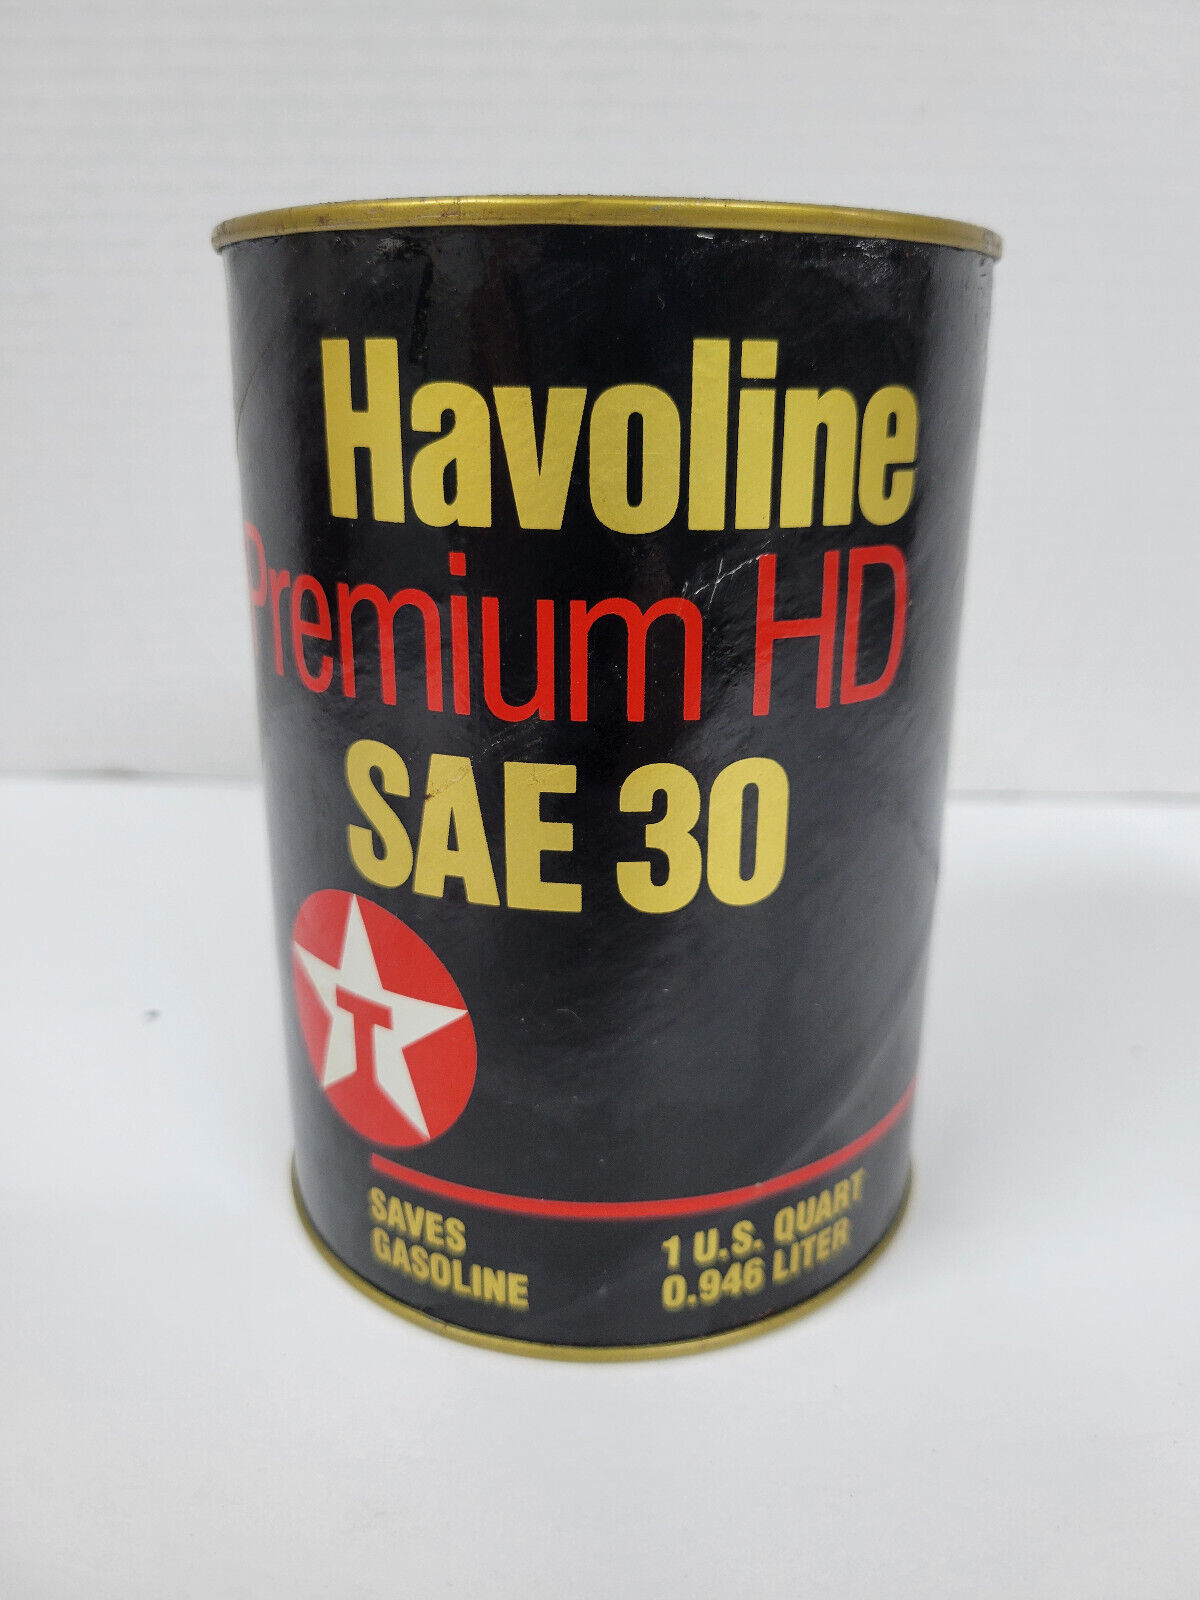 NOS Unopened - Texaco Havoline Premium HD Motor Oil 1 U.S. Quart Cardboard Can